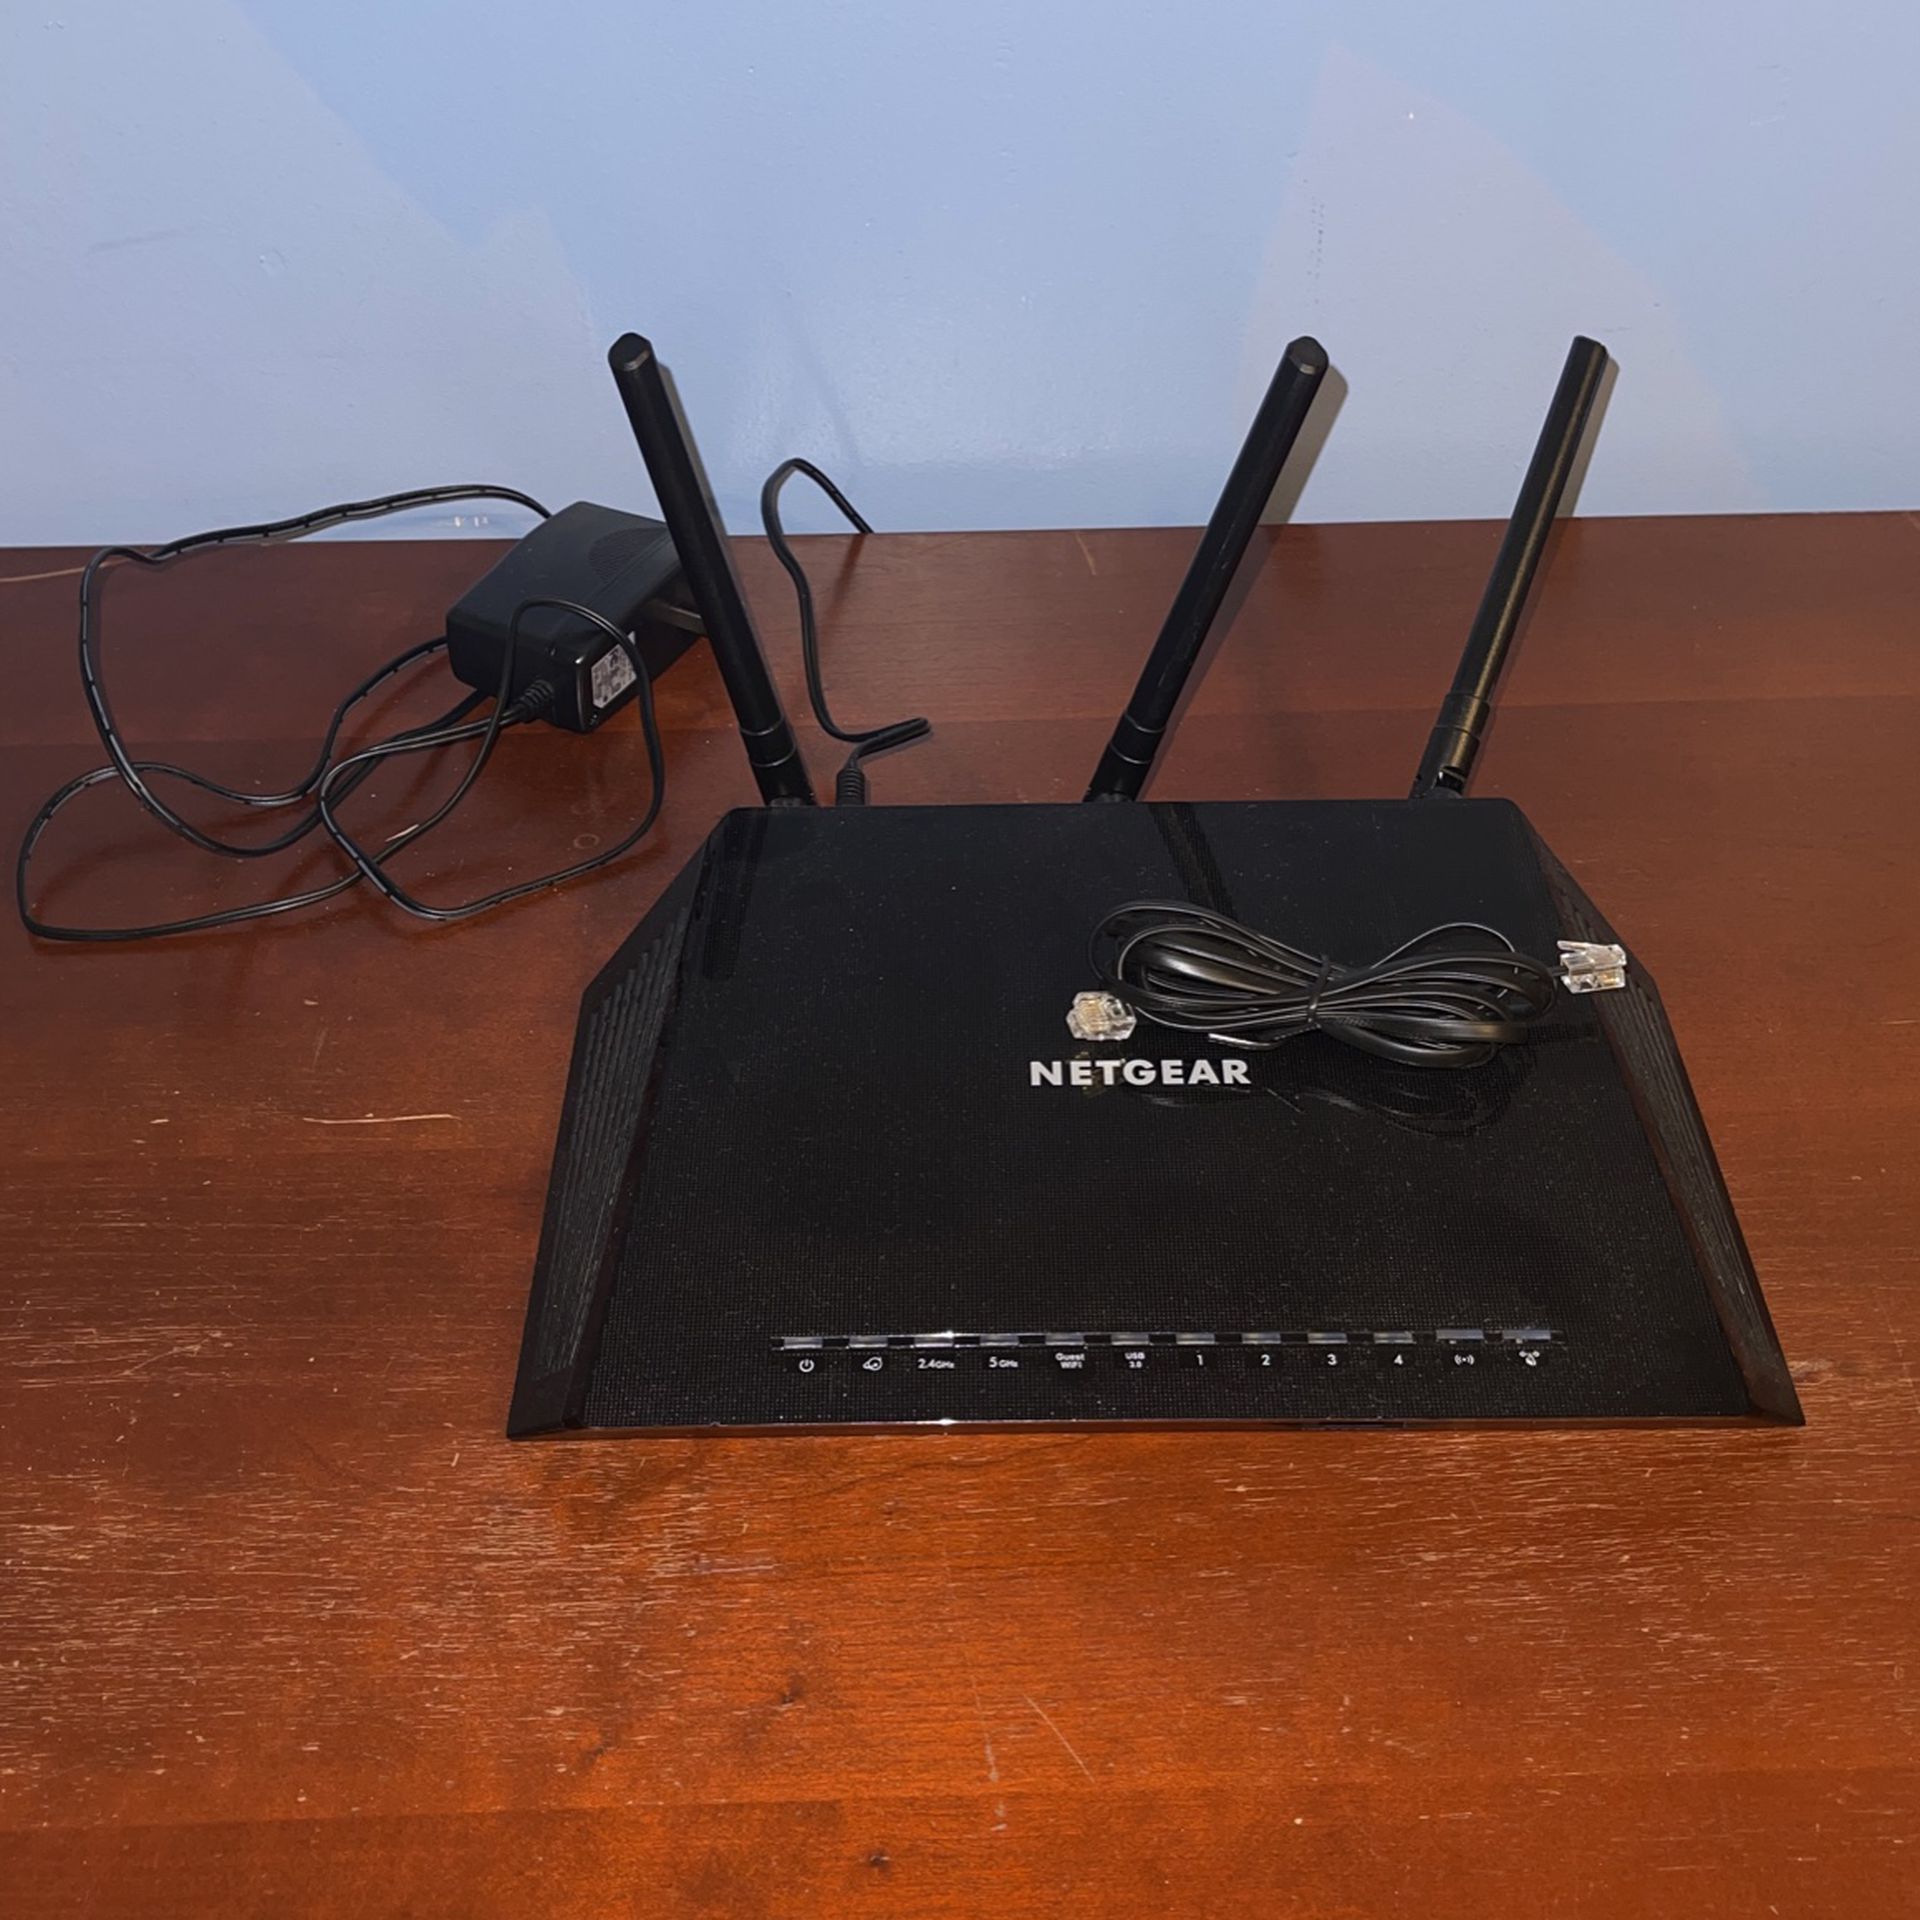 NETGEAR - Nighthawk AC1900 Dual-Band Wi-Fi 5 Router - Black